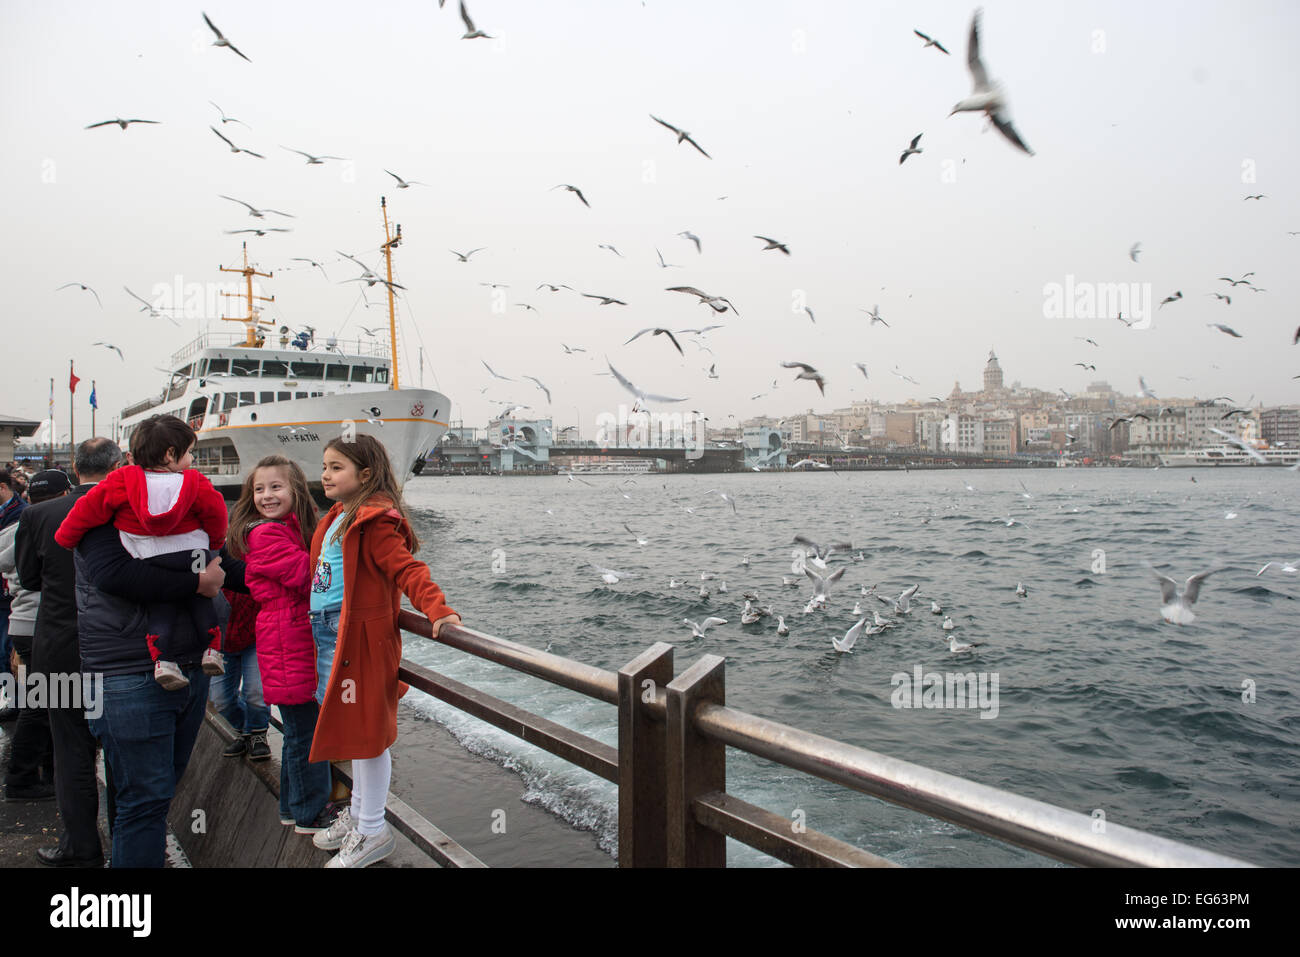 ISTANBUL, Türkei - ISTANBUL, Türkei - zwei kleine Mädchen posieren für Fotos mit den Möwen am Ufer von Eminonu in Istanbul. Im Hintergrund befindet sich der Galataturm. Eminonu ist eine historische Gegend mit einer reichen osmanischen Vergangenheit und das Herz des alten Istanbul, wo Händler und Touristen sich in einem farbenfrohen Spektakel des kulturellen Austauschs vereinen. Stockfoto